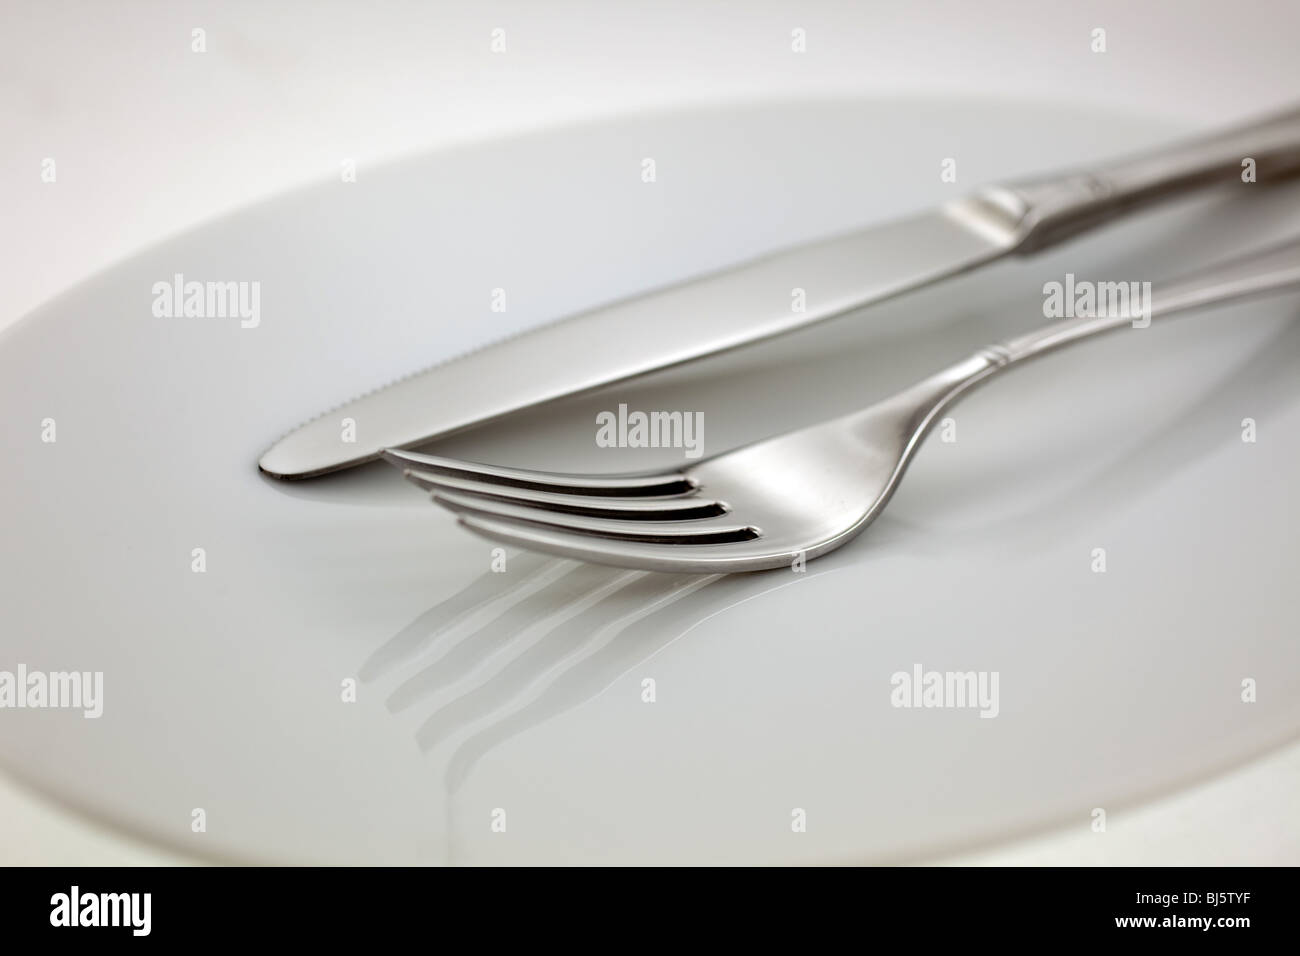 Cubiertos de acero: tenedor y cuchillo sobre una placa blanca. Foto de stock